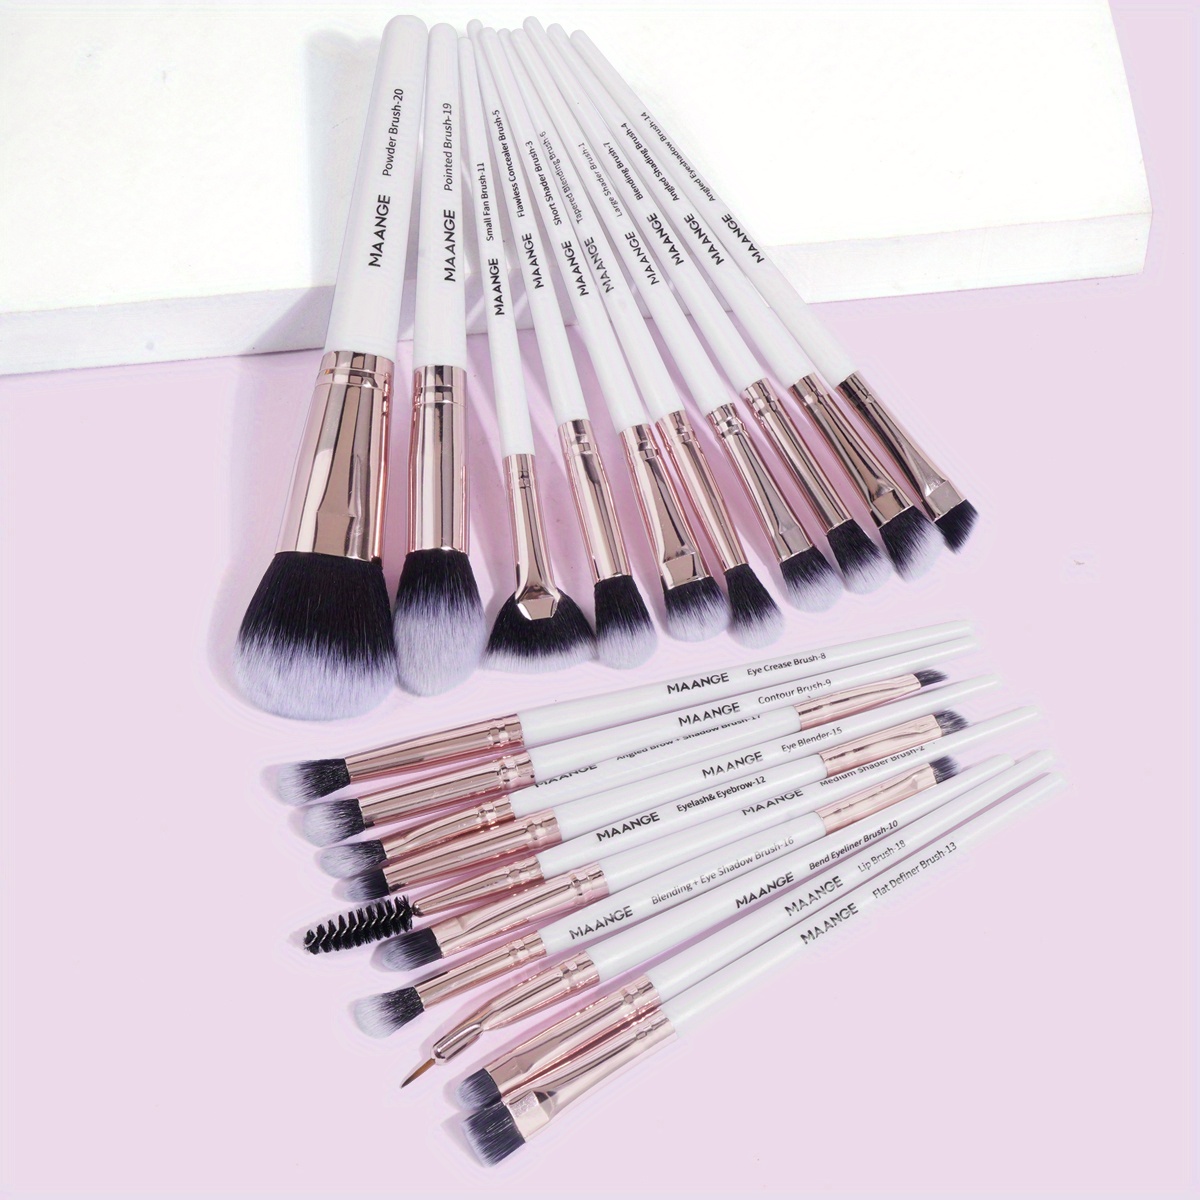 MAANGE 15/12Pcs Makeup Brushes Set Eye Shadow Powder Foundation Blush  Blending Brushes Kits Beauty Make Up Cosmetic Tools